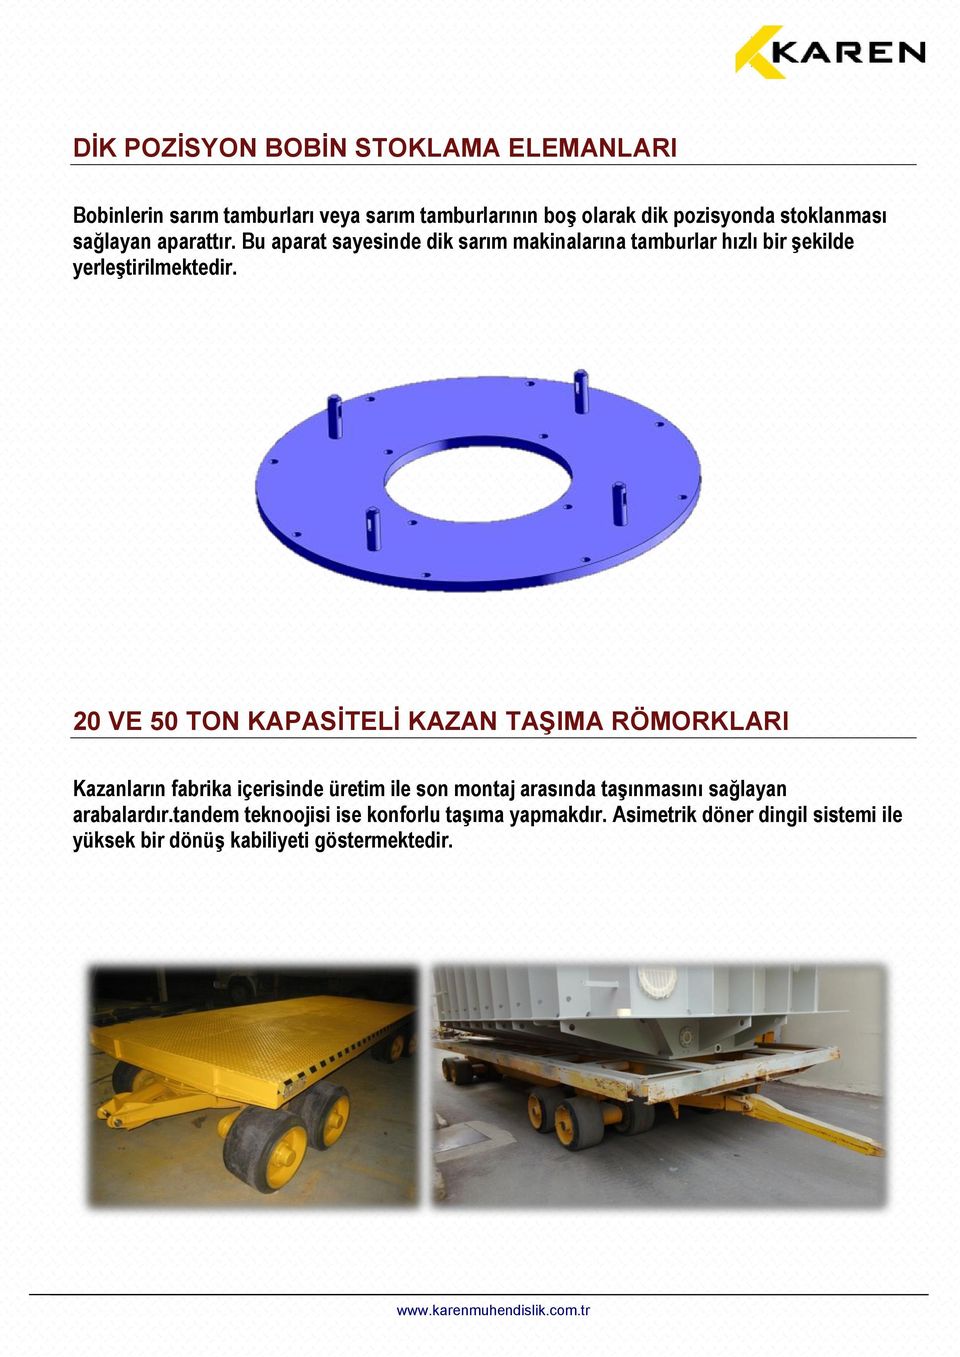 20 VE 50 TON KAPASİTELİ KAZAN TAŞIMA RÖMORKLARI Kazanların fabrika içerisinde üretim ile son montaj arasında taşınmasını